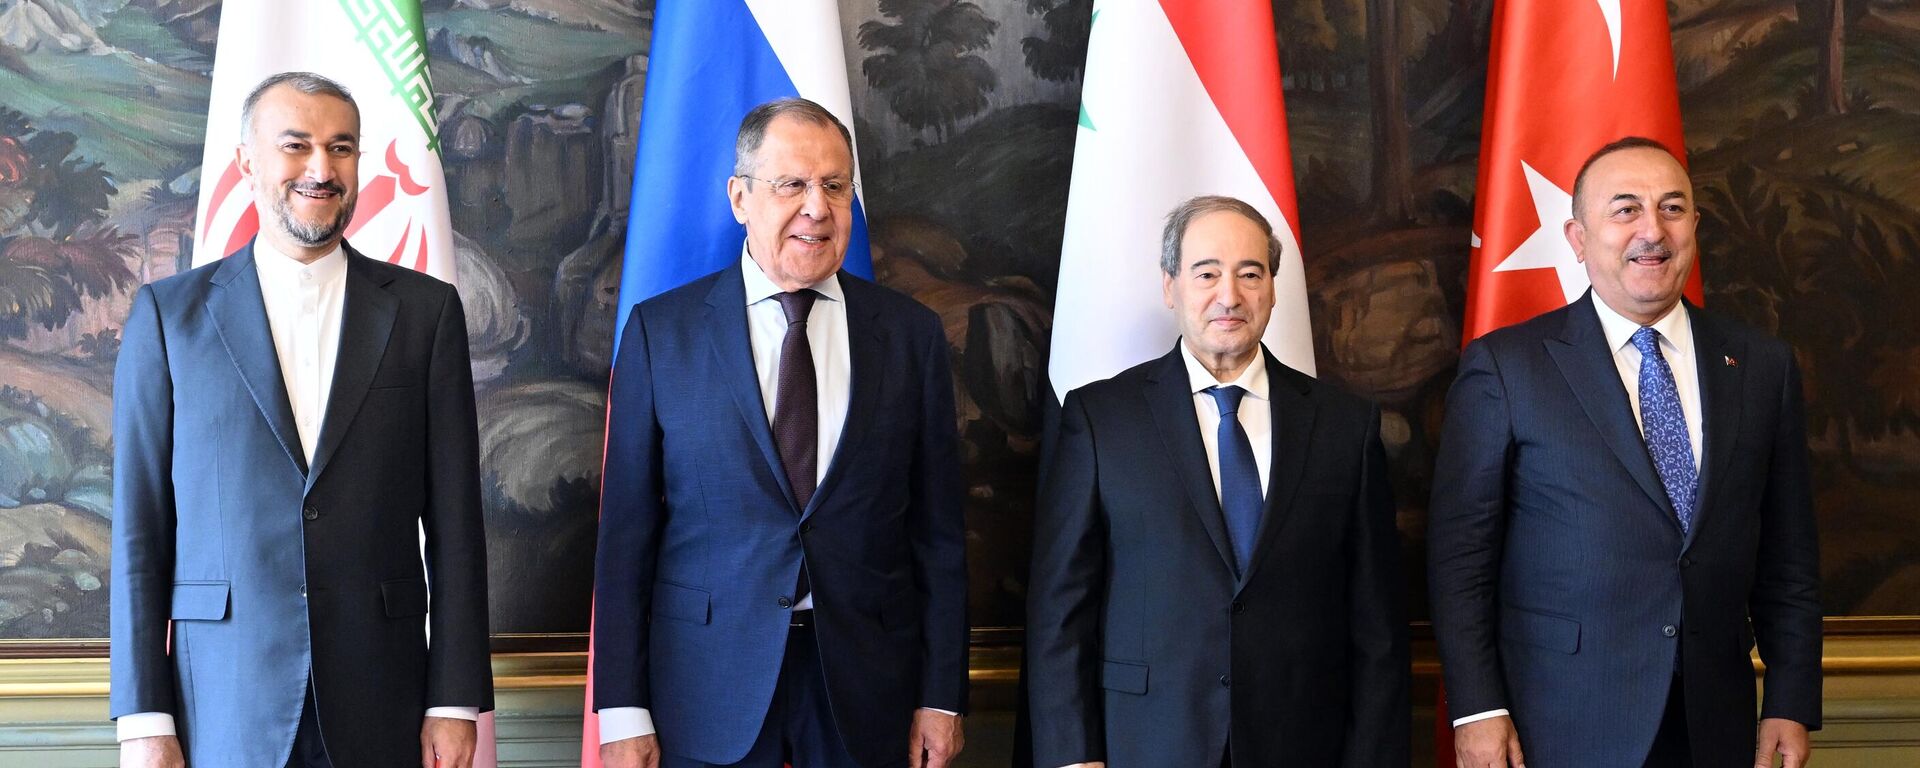 Los ministros de Asuntos Exteriores ruso, sirio, iraní y turco se reúnen para tratar el acuerdo de paz sirio, el 10 de mayo, 2023 - Sputnik Mundo, 1920, 11.05.2023